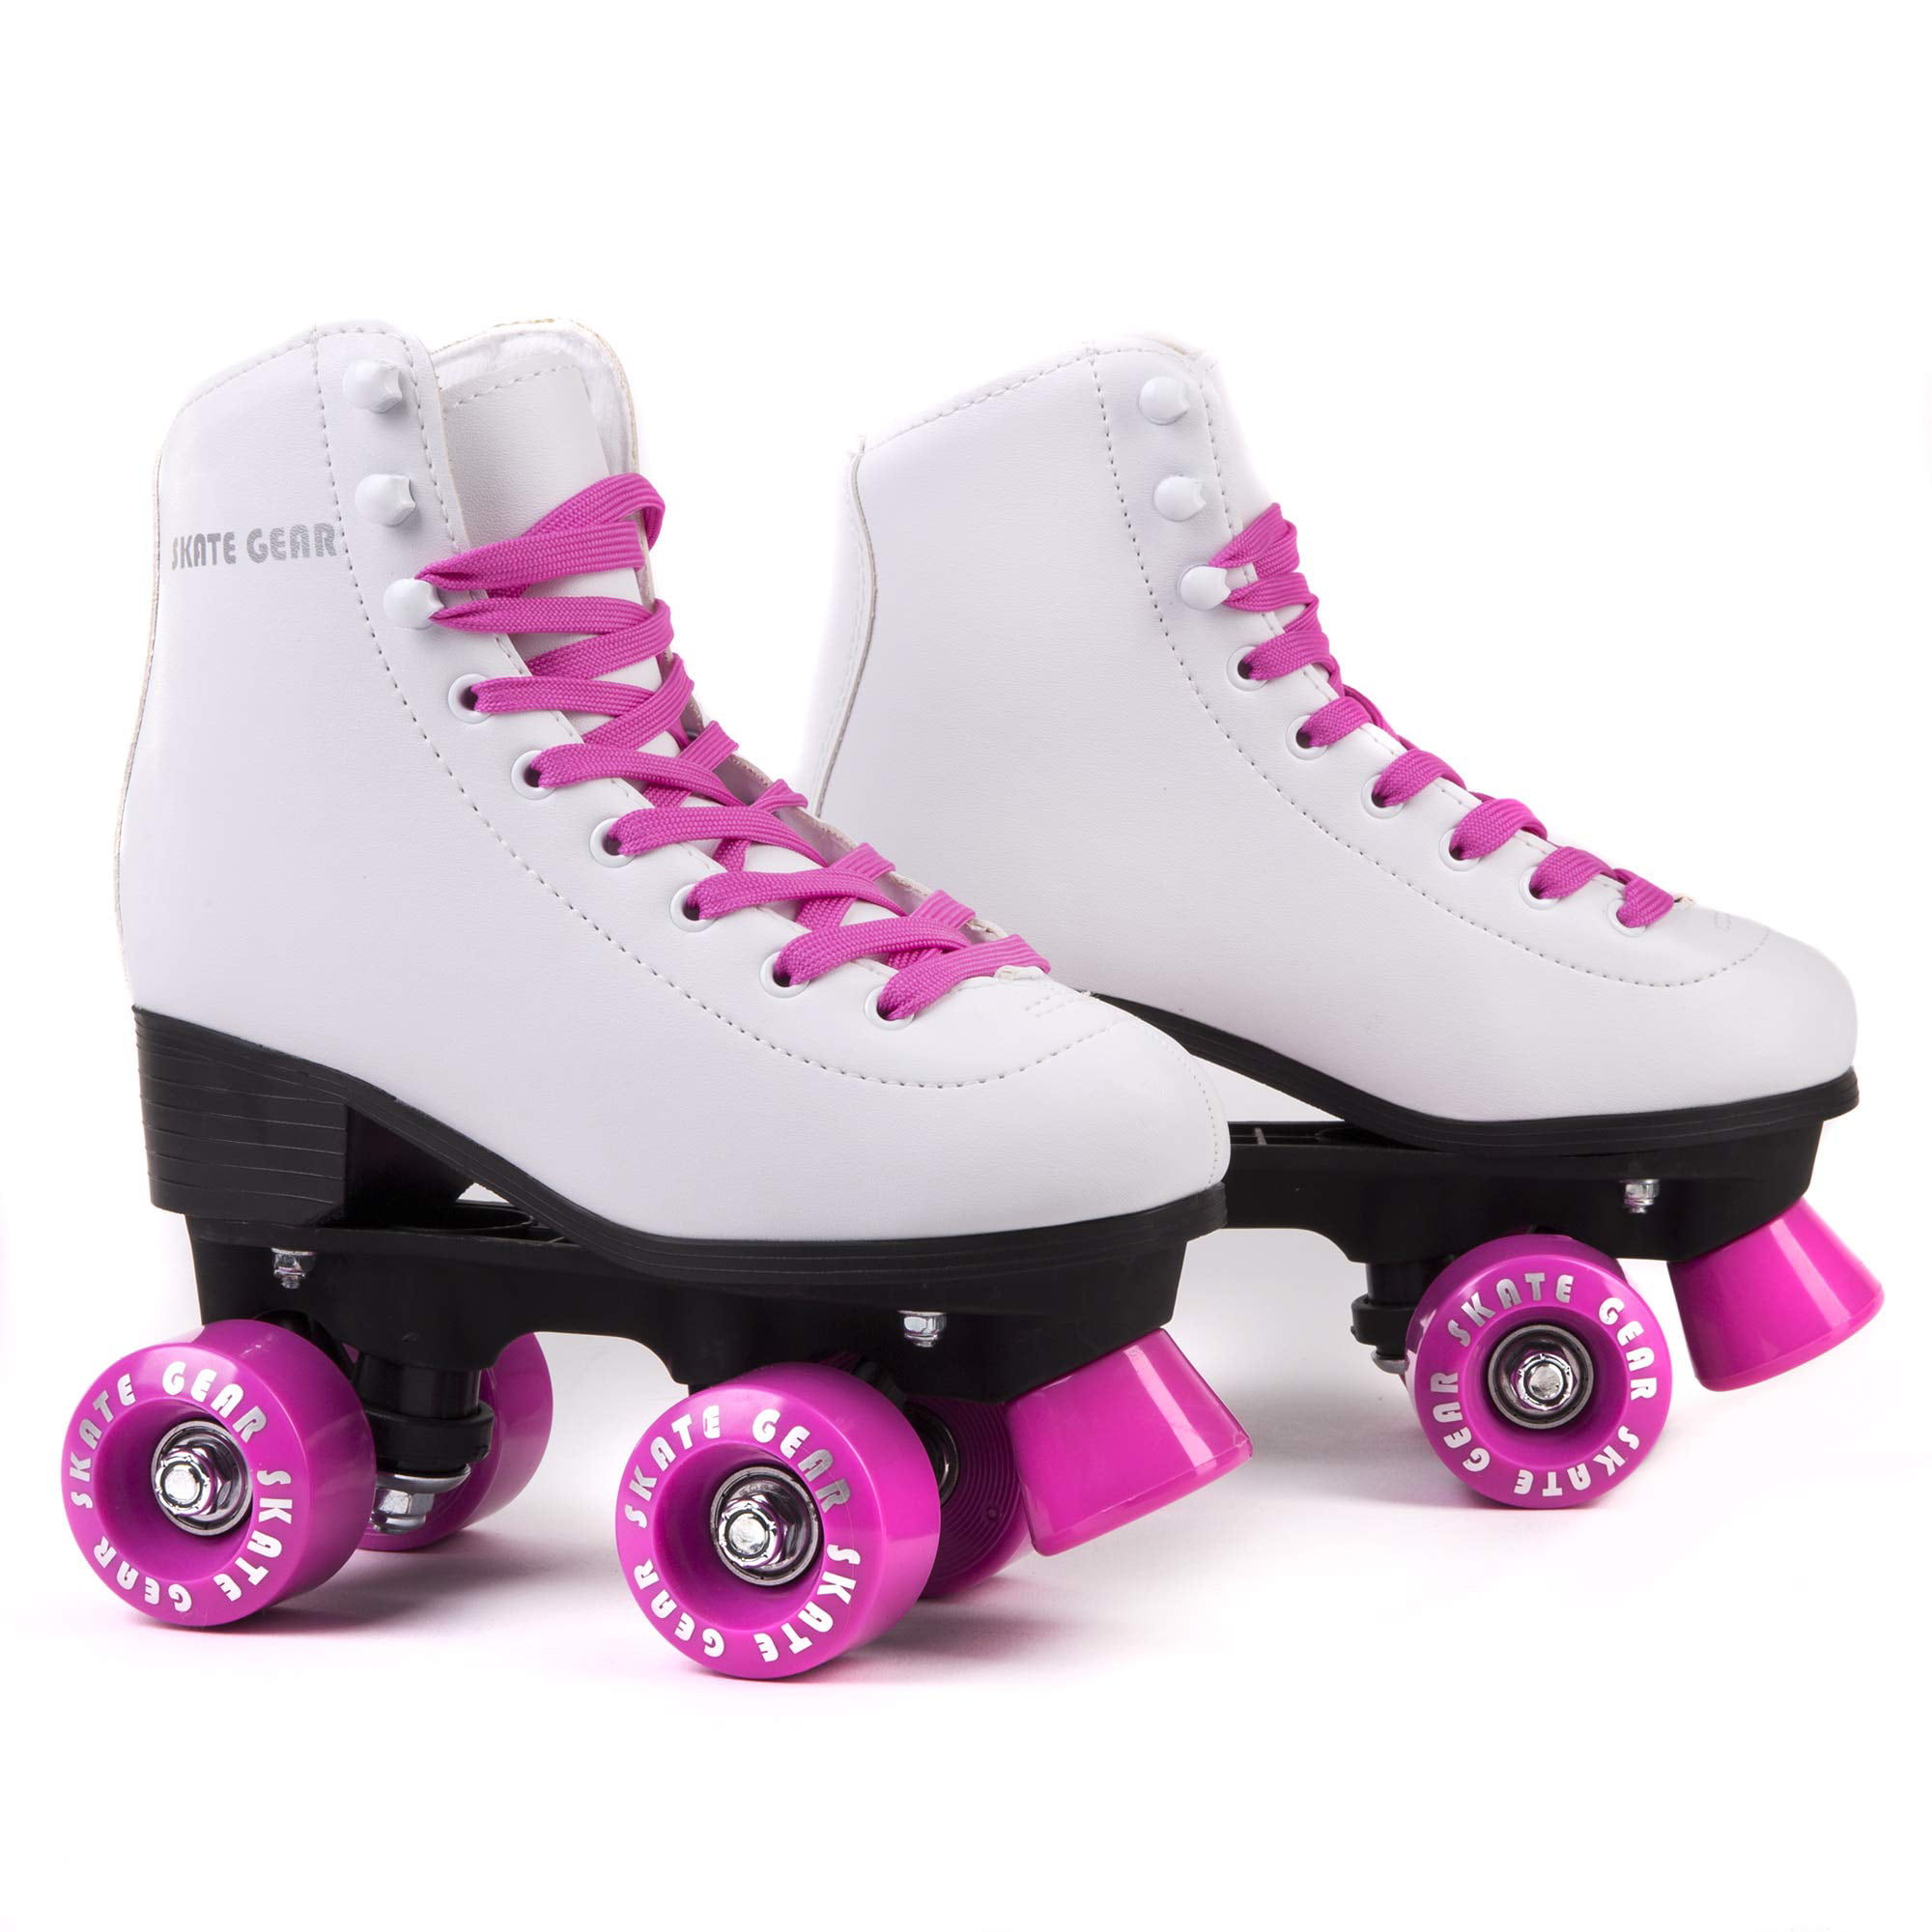 Skate Gear Cute Roller Skates for Kids Christmas Gifts 